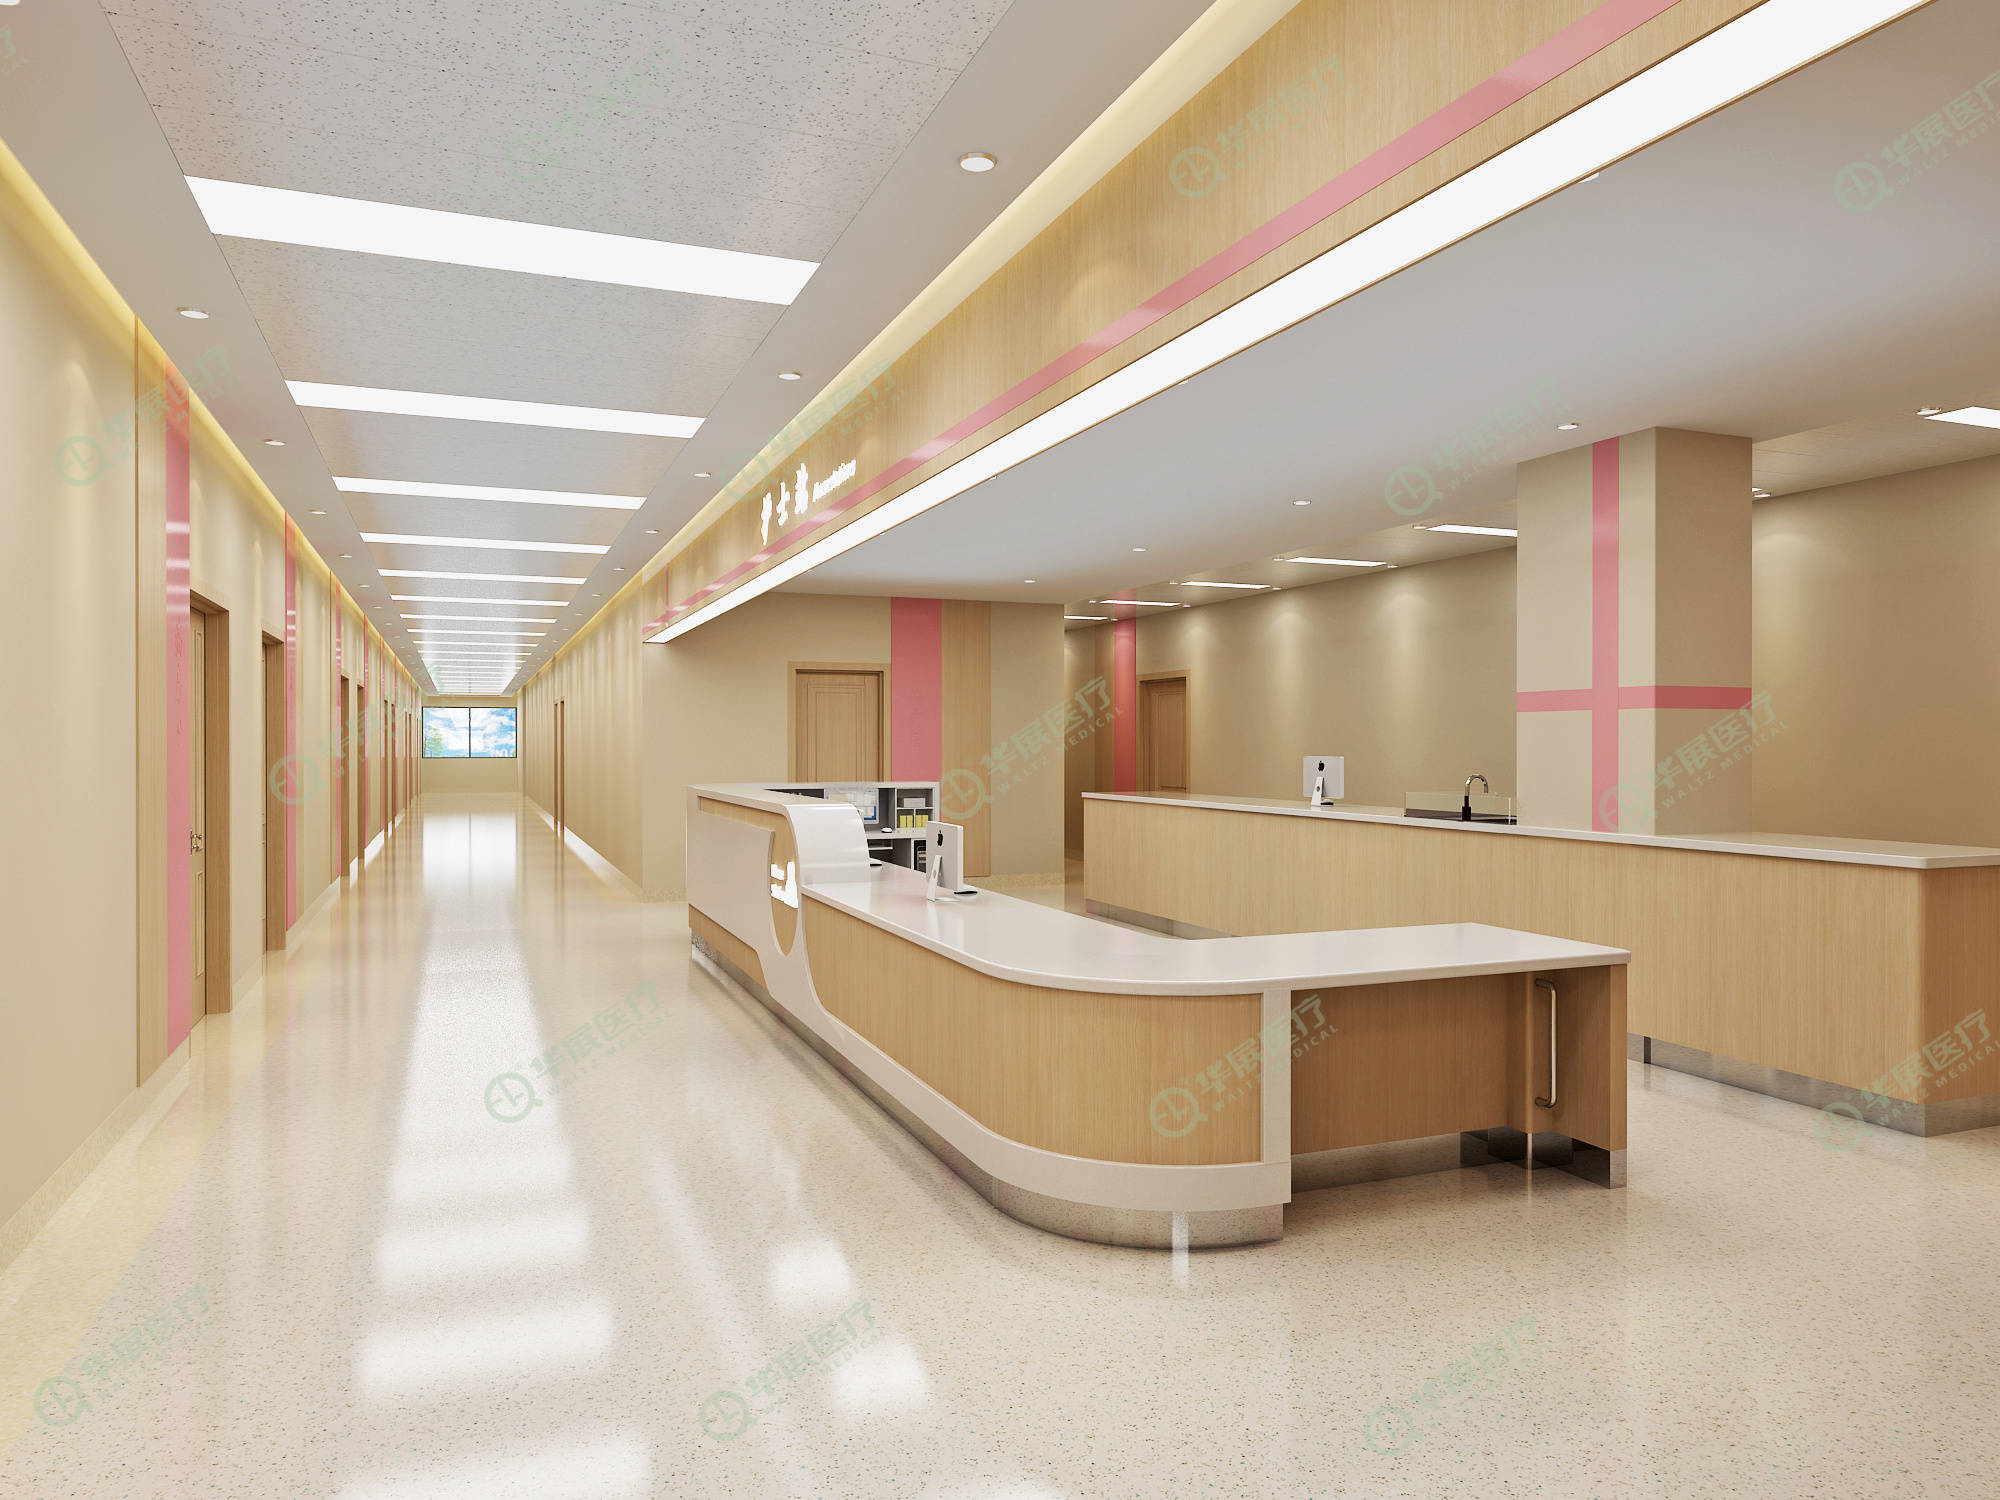 妇科护士站效果图华展医疗打造的医疗家具整体解决方案,严格遵照规范